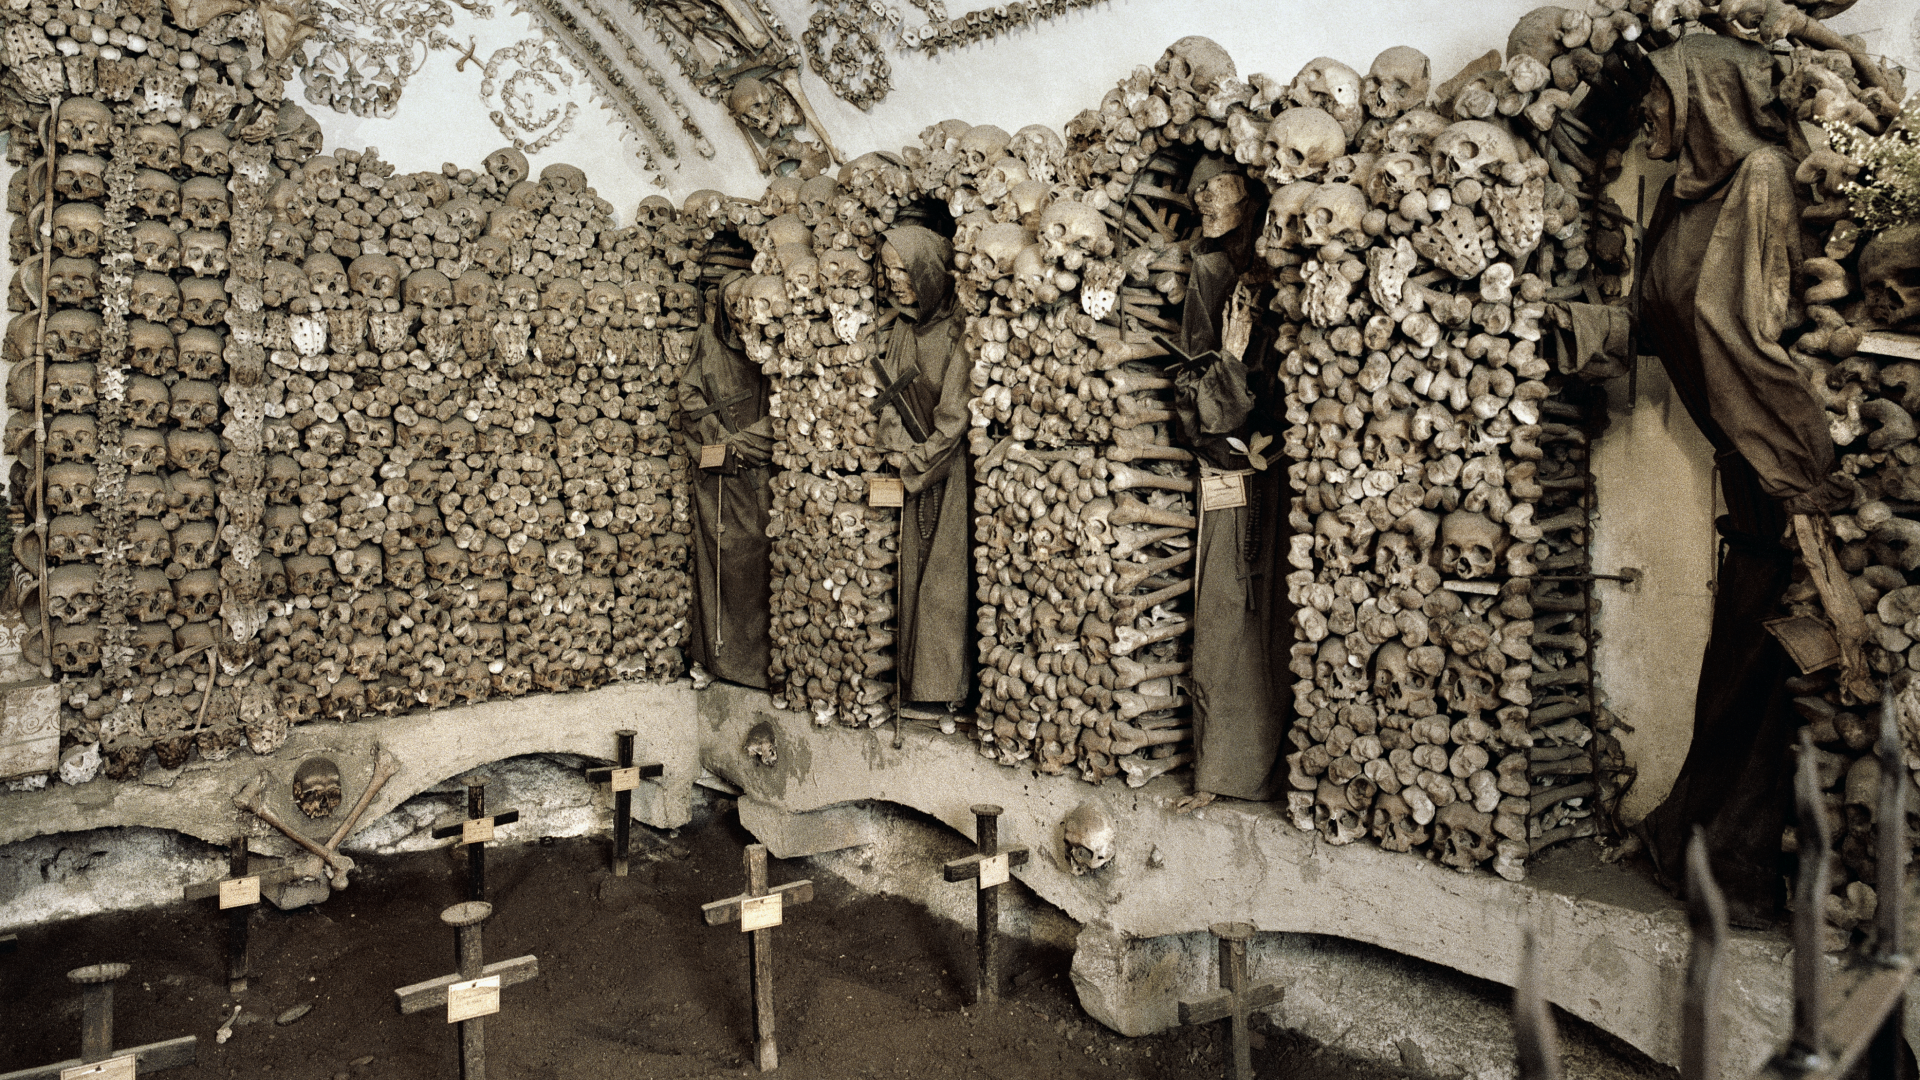 Capuchin Crypt, Italy